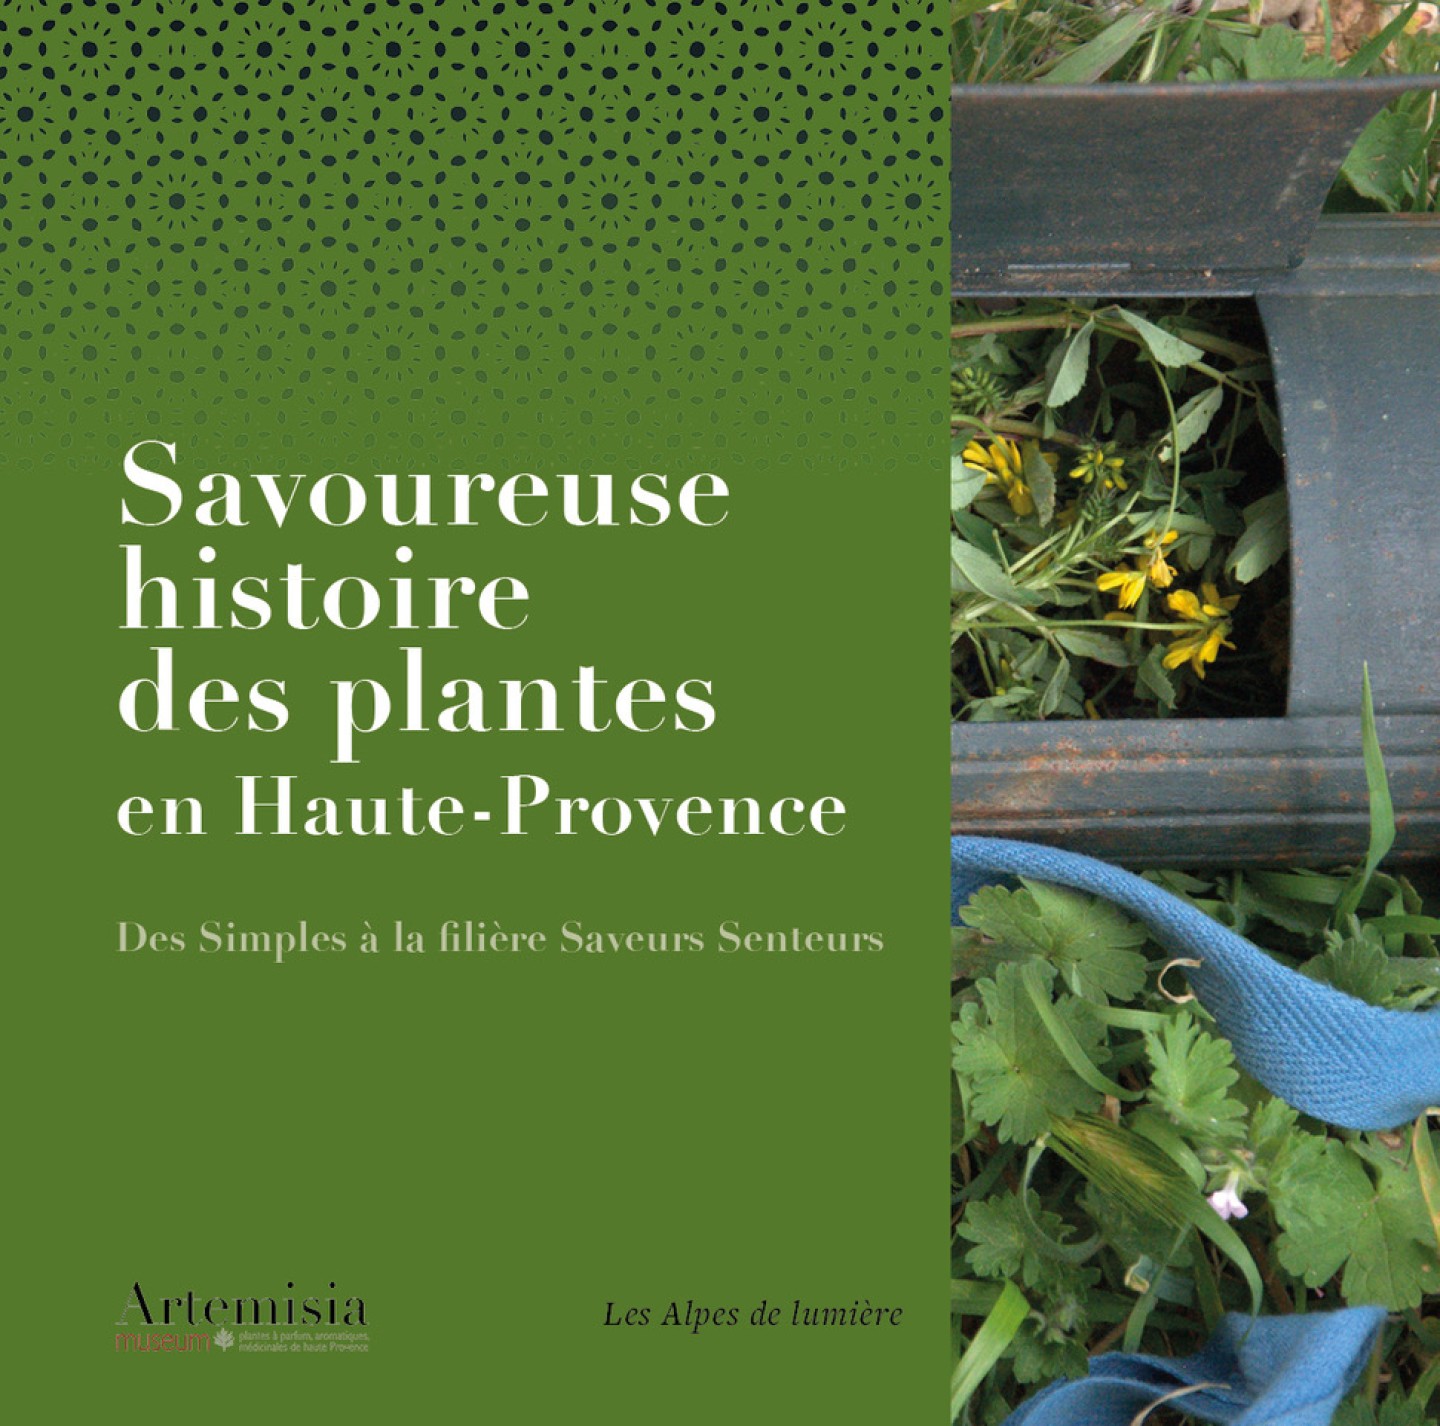 Savoureuse histoire des plantes en Haute-Provence - Artemisia